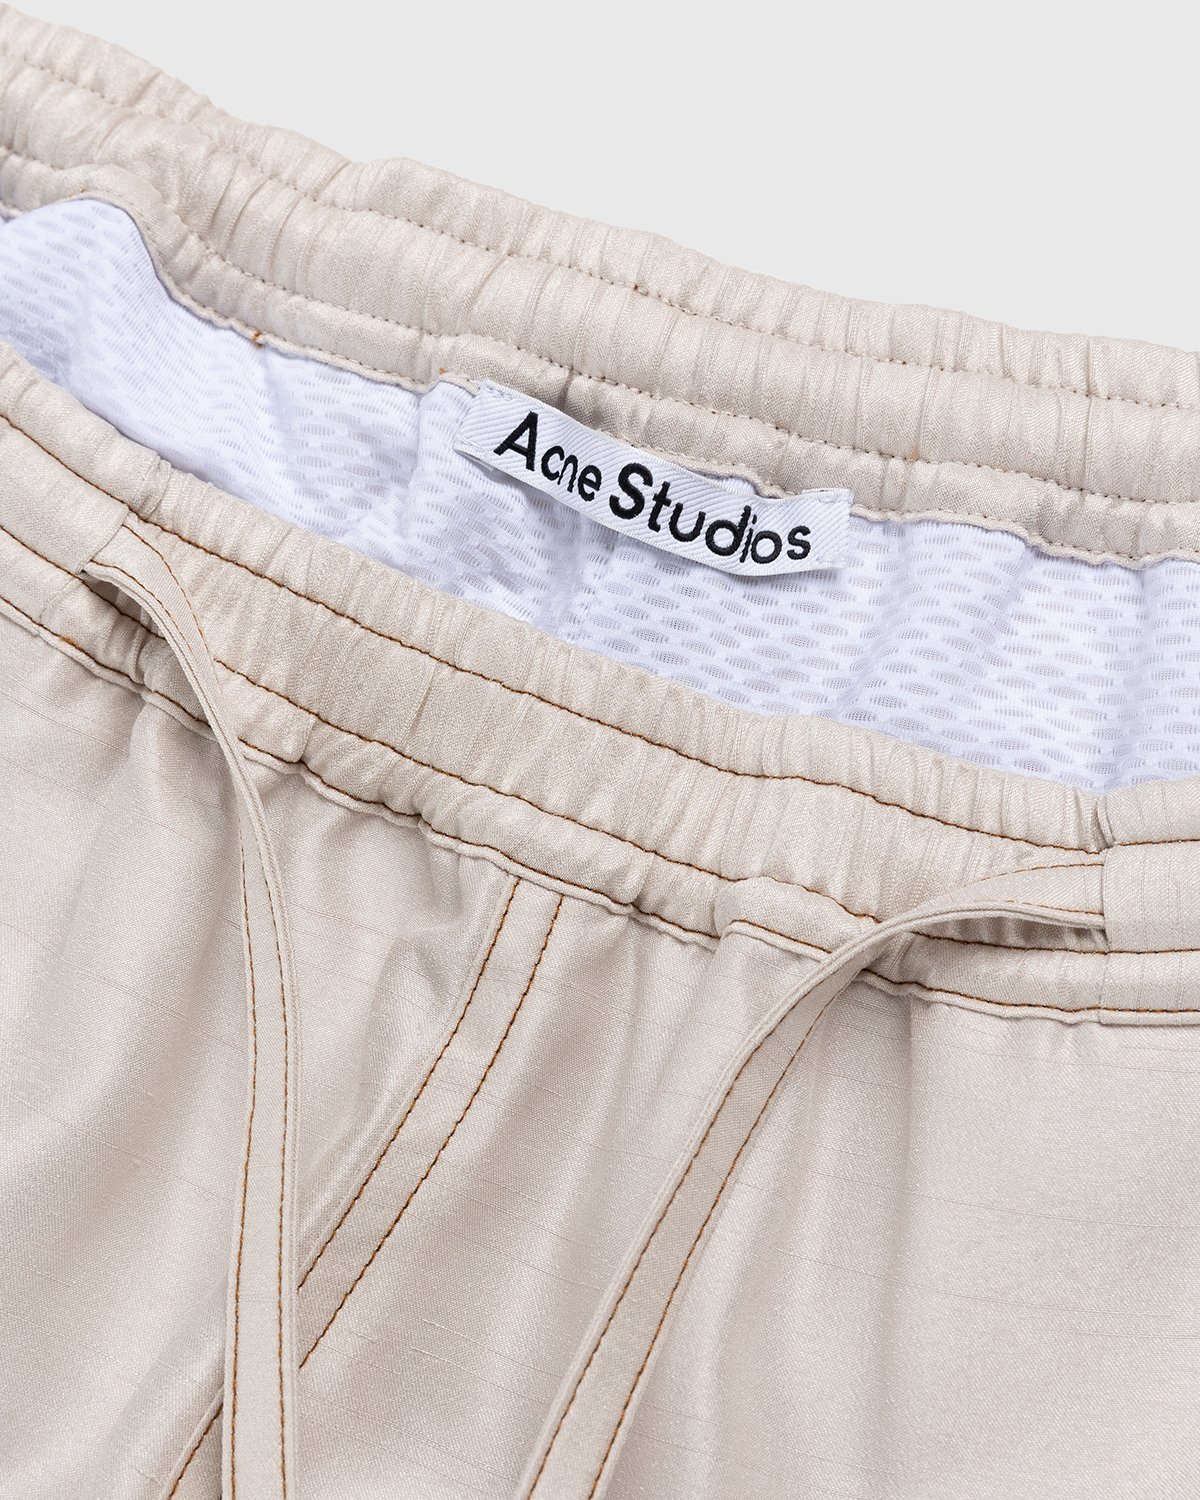 Acne Studios - Drawstring Shorts Light Beige - Clothing - Beige - Image 6